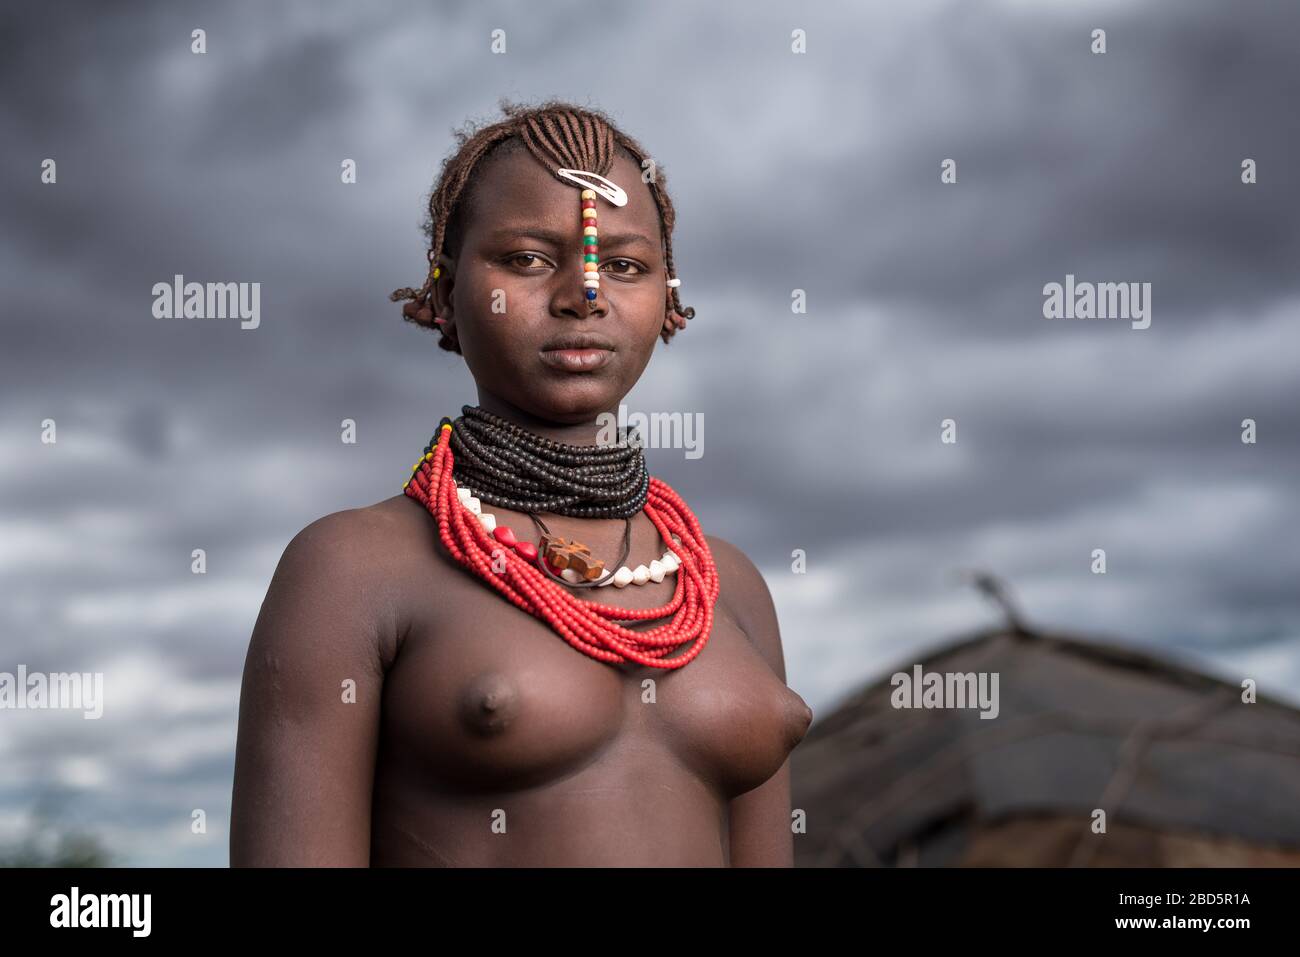 Una giovane donna non sposata è membro del gruppo etnico o della tribù di Dassanetch, Omorate, Etiopia meridionale. Foto Stock